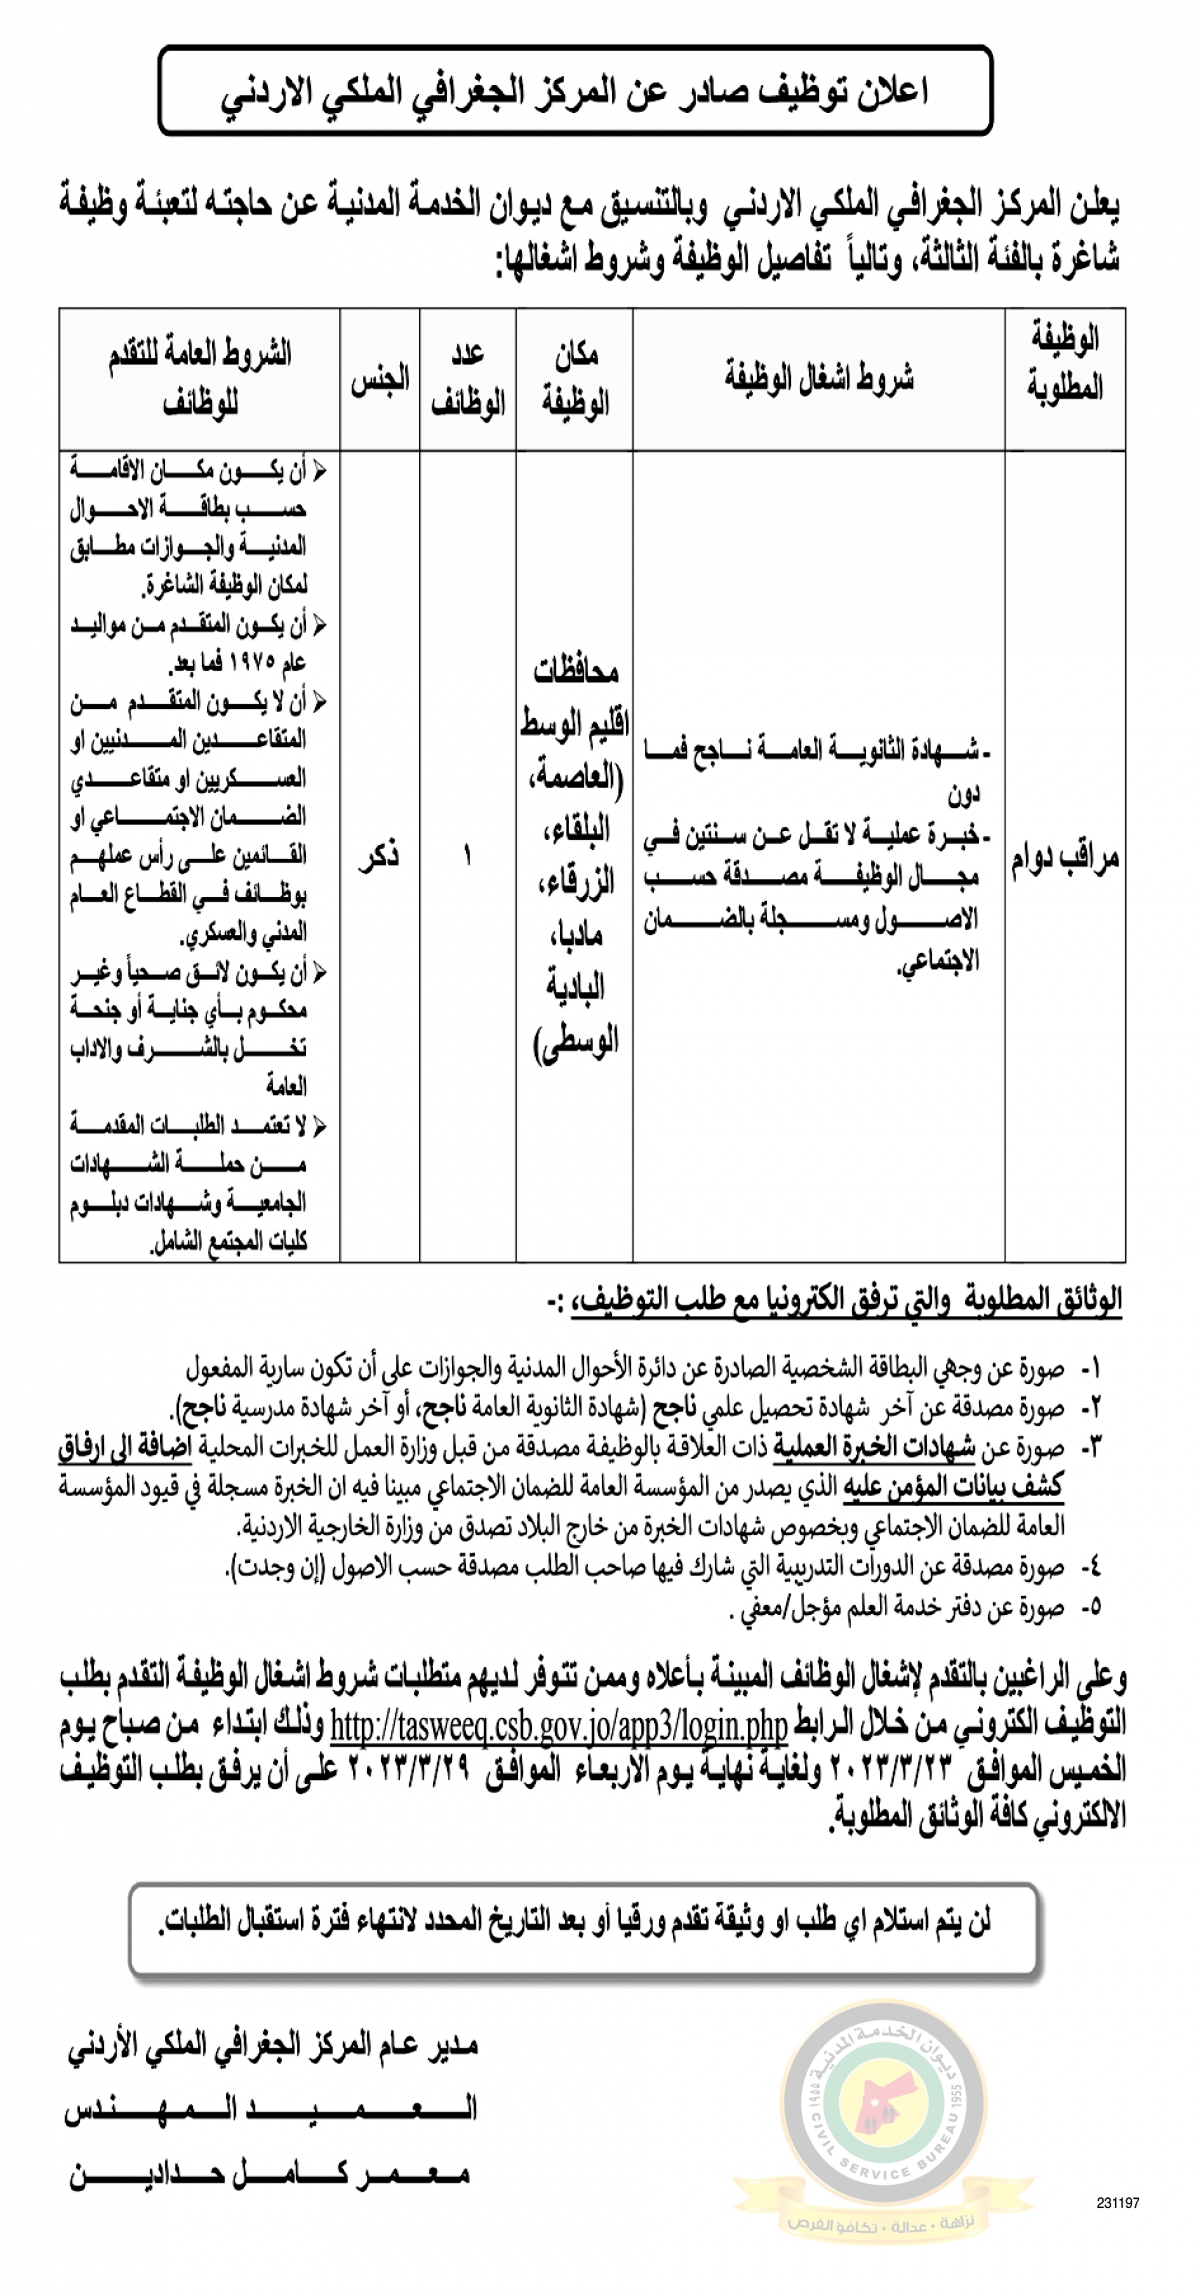 اعلان وظائف شاغرة بالفئة الثالثة صادرعن المركز الجغرافي الملكي الأردني